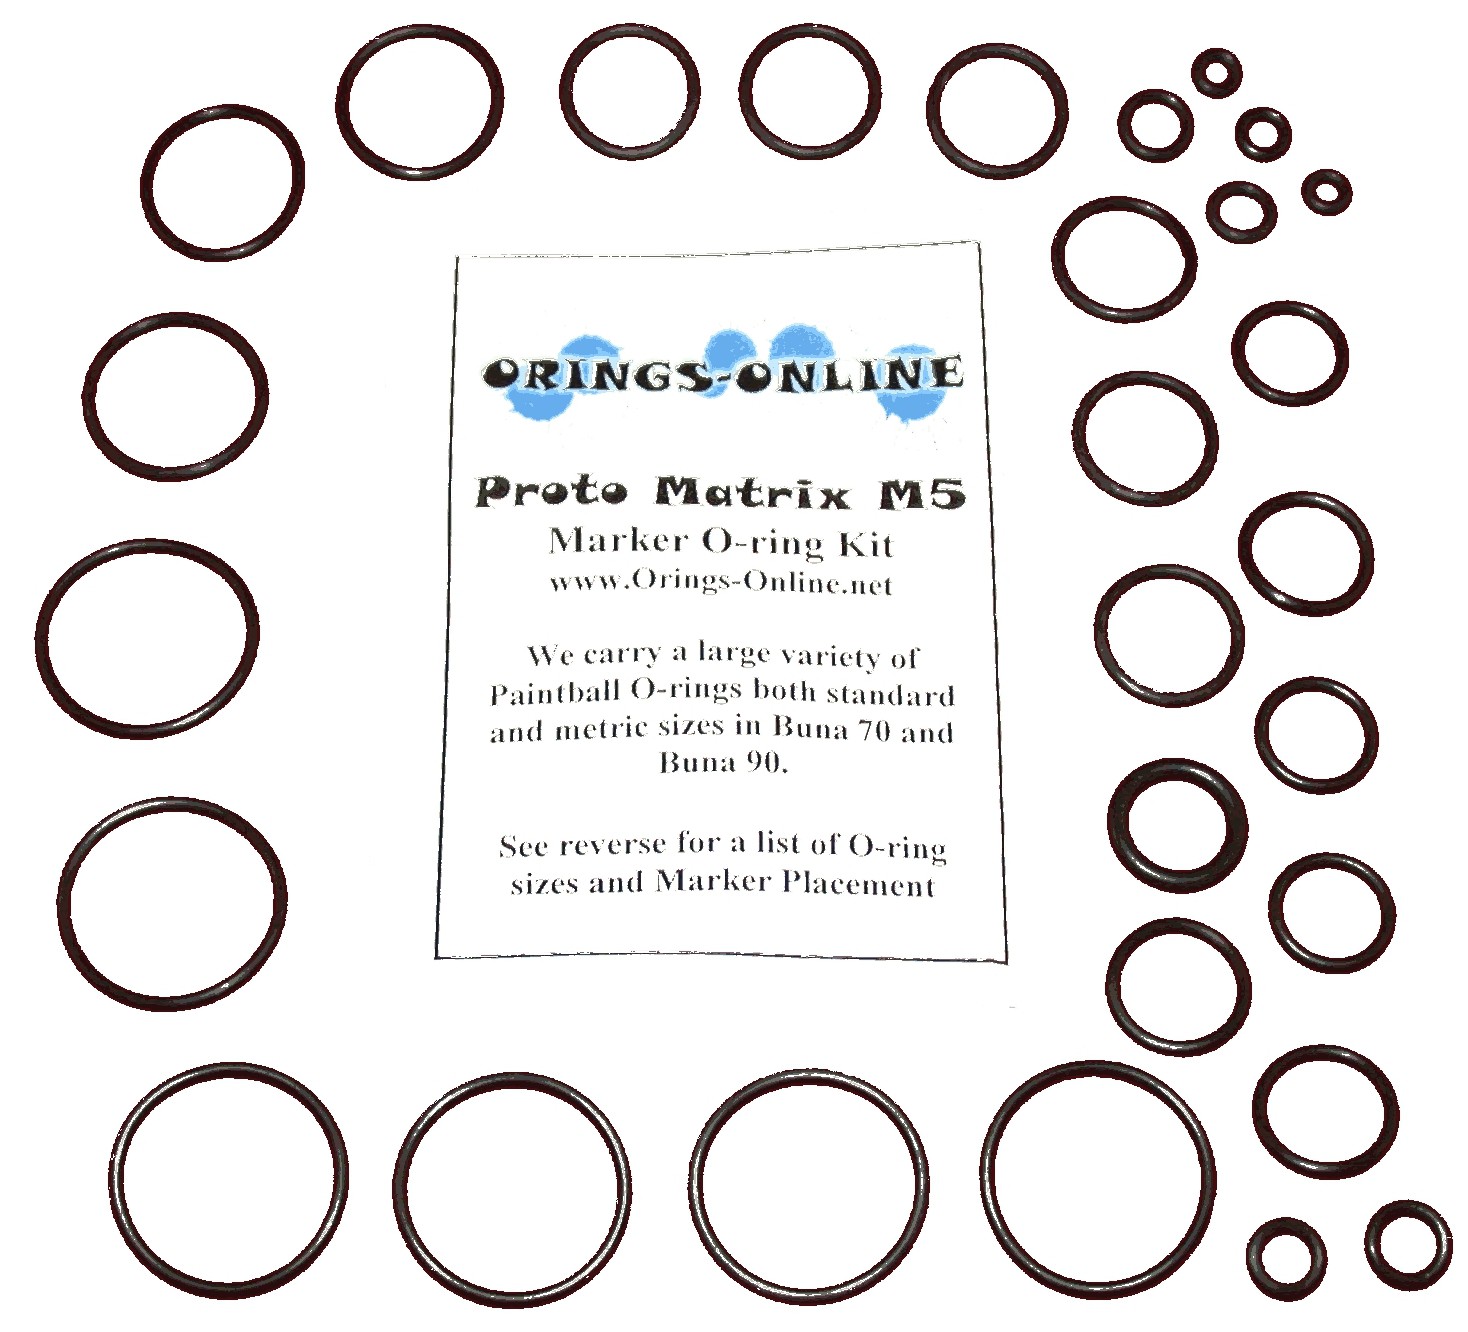 kits Proto Matrix M5 Paintball Marker O-ring Oring Kit x 2 rebuilds 